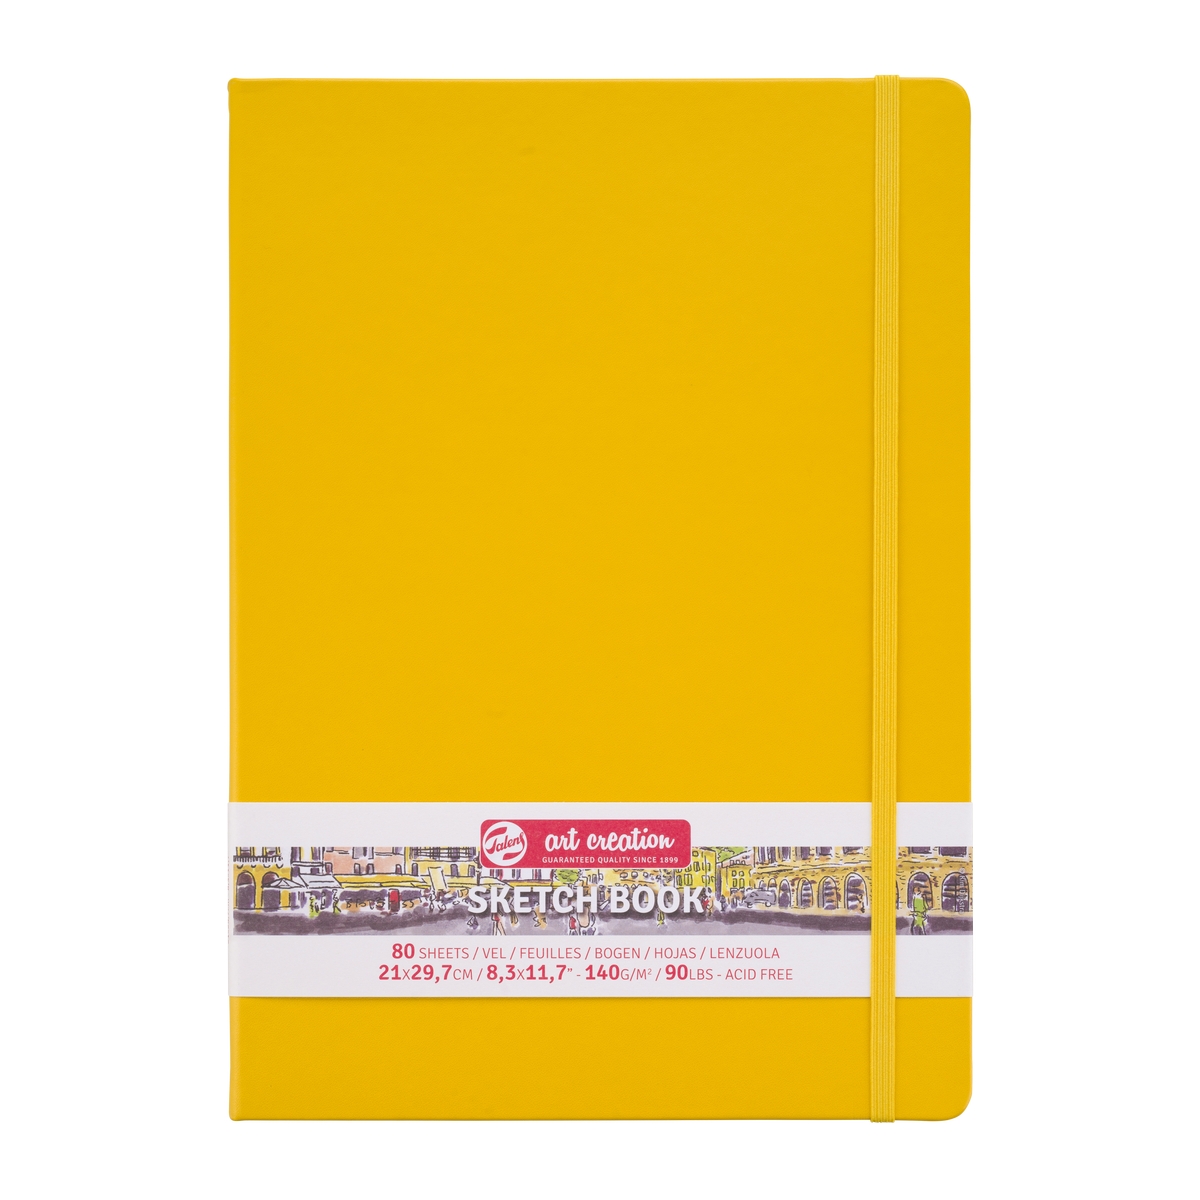 Скетчбук для рисования ARTCREATION 140г/кв.м 210х300мм 80л. желтый по 1 400.00 руб от Royal Talens